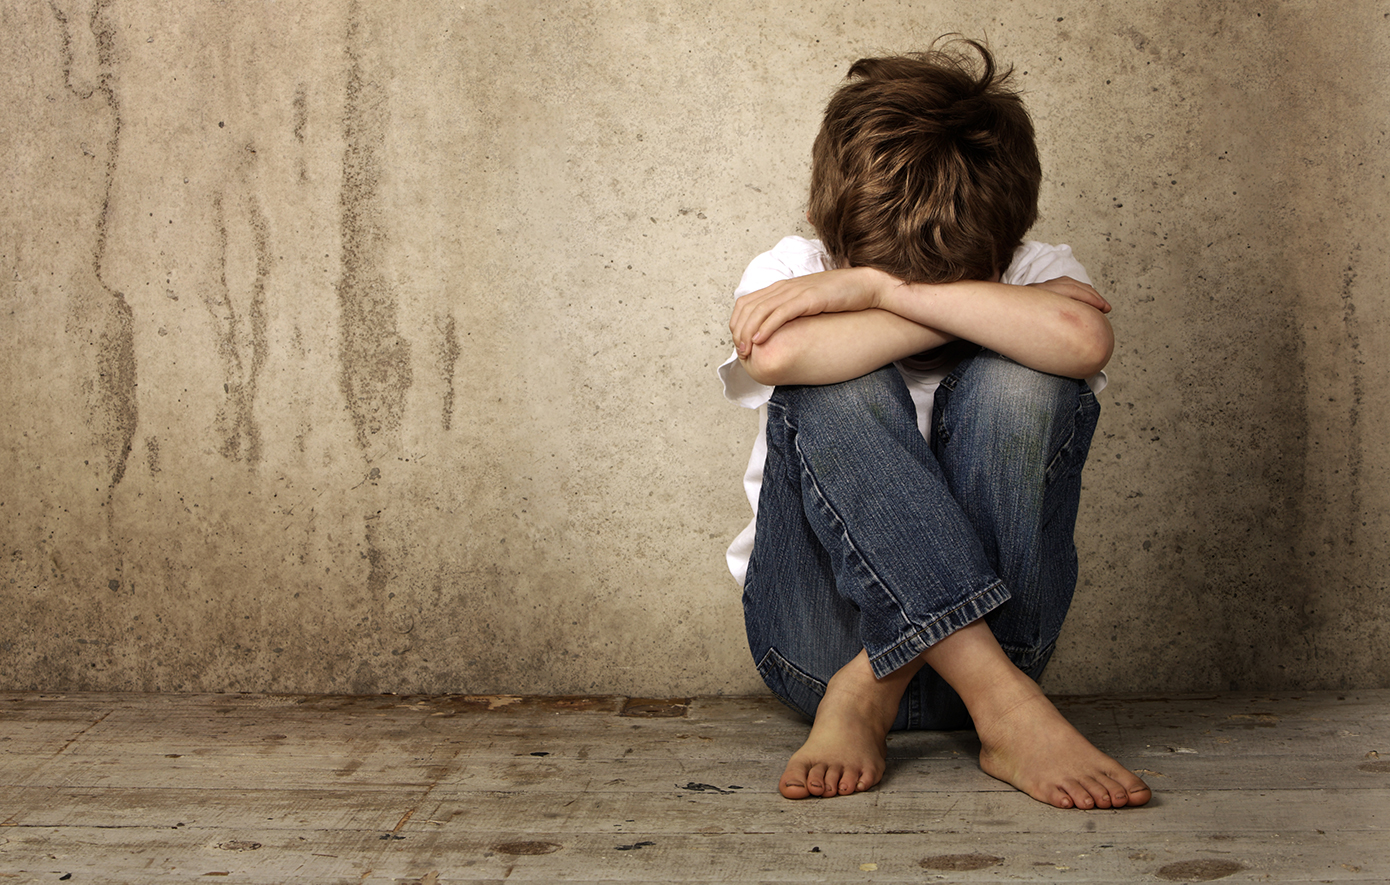 Σοκ στην Χαλκίδα: Αγόρι επτά ετών ισχυρίζεται ότι τον βίασε 11χρονος